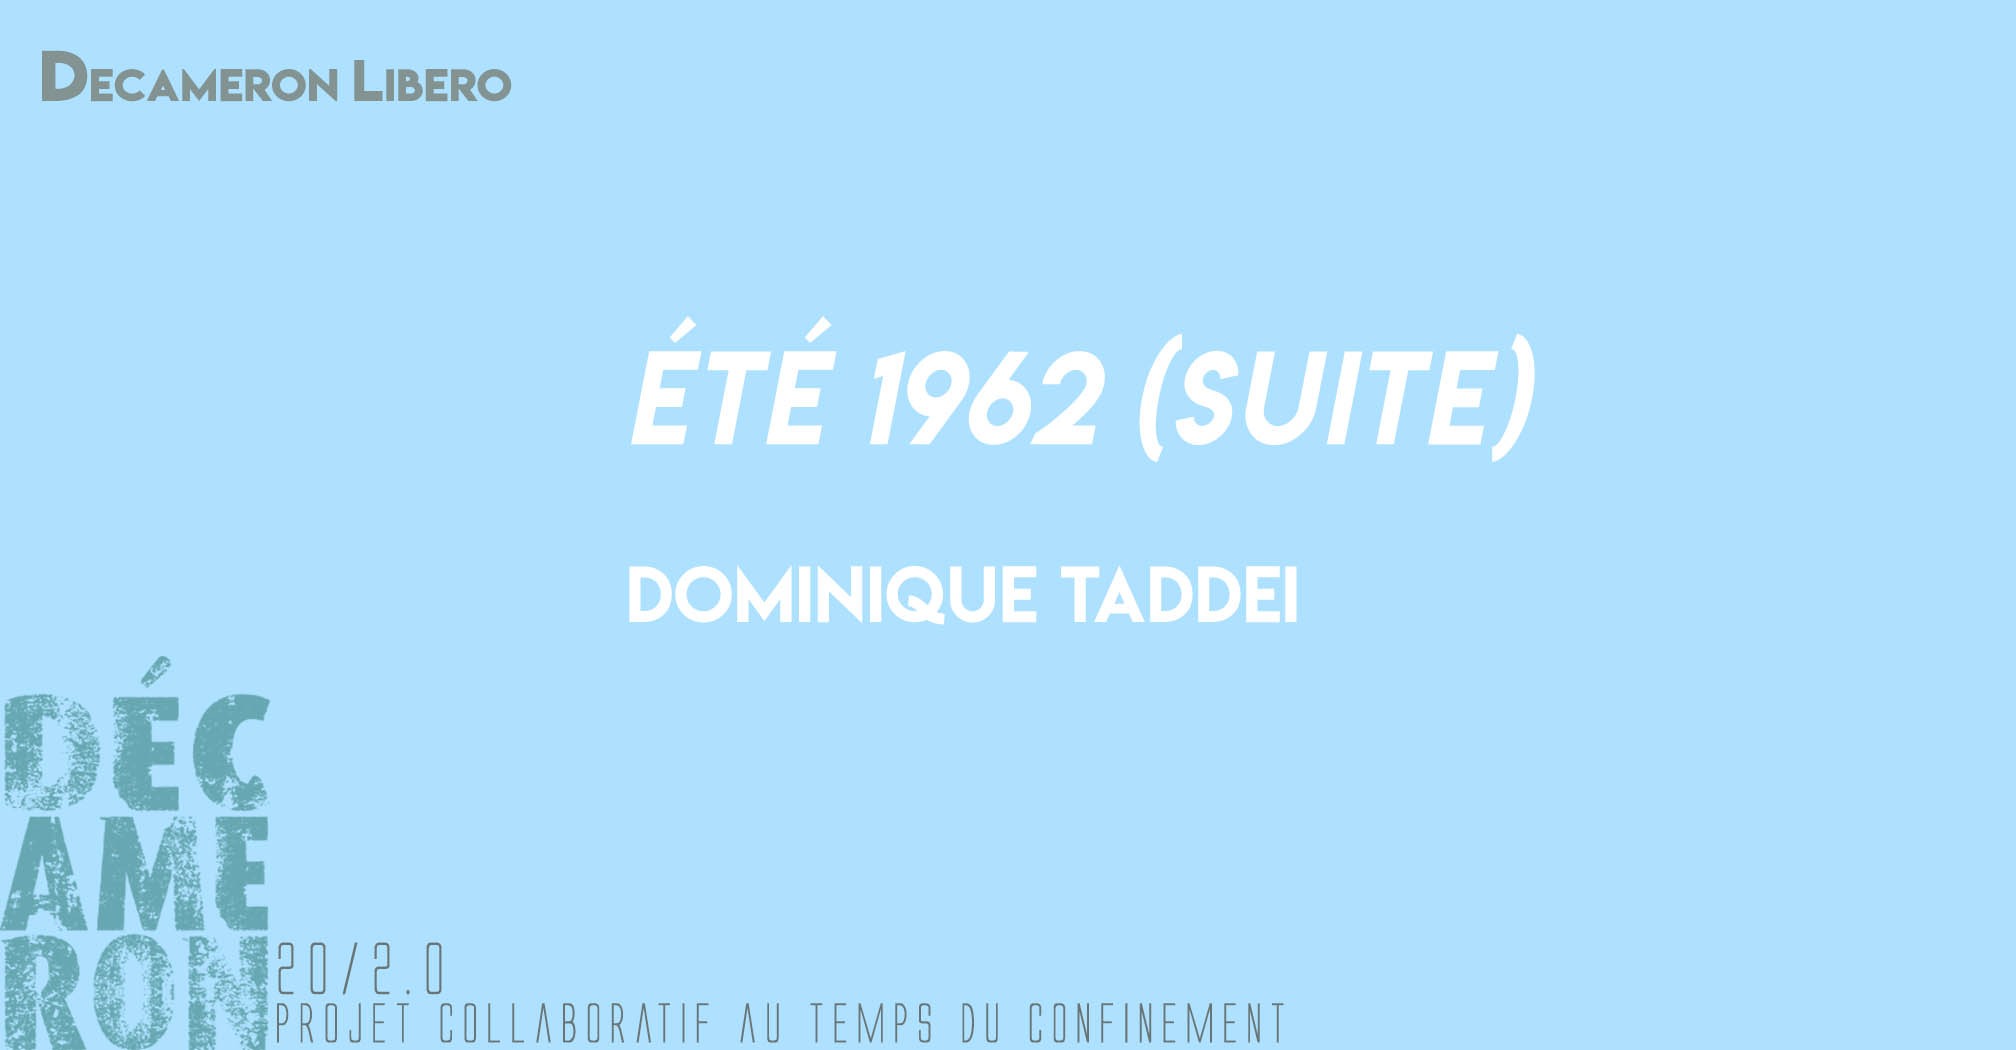 Eté 1962 (suite) - Dominique Taddei 